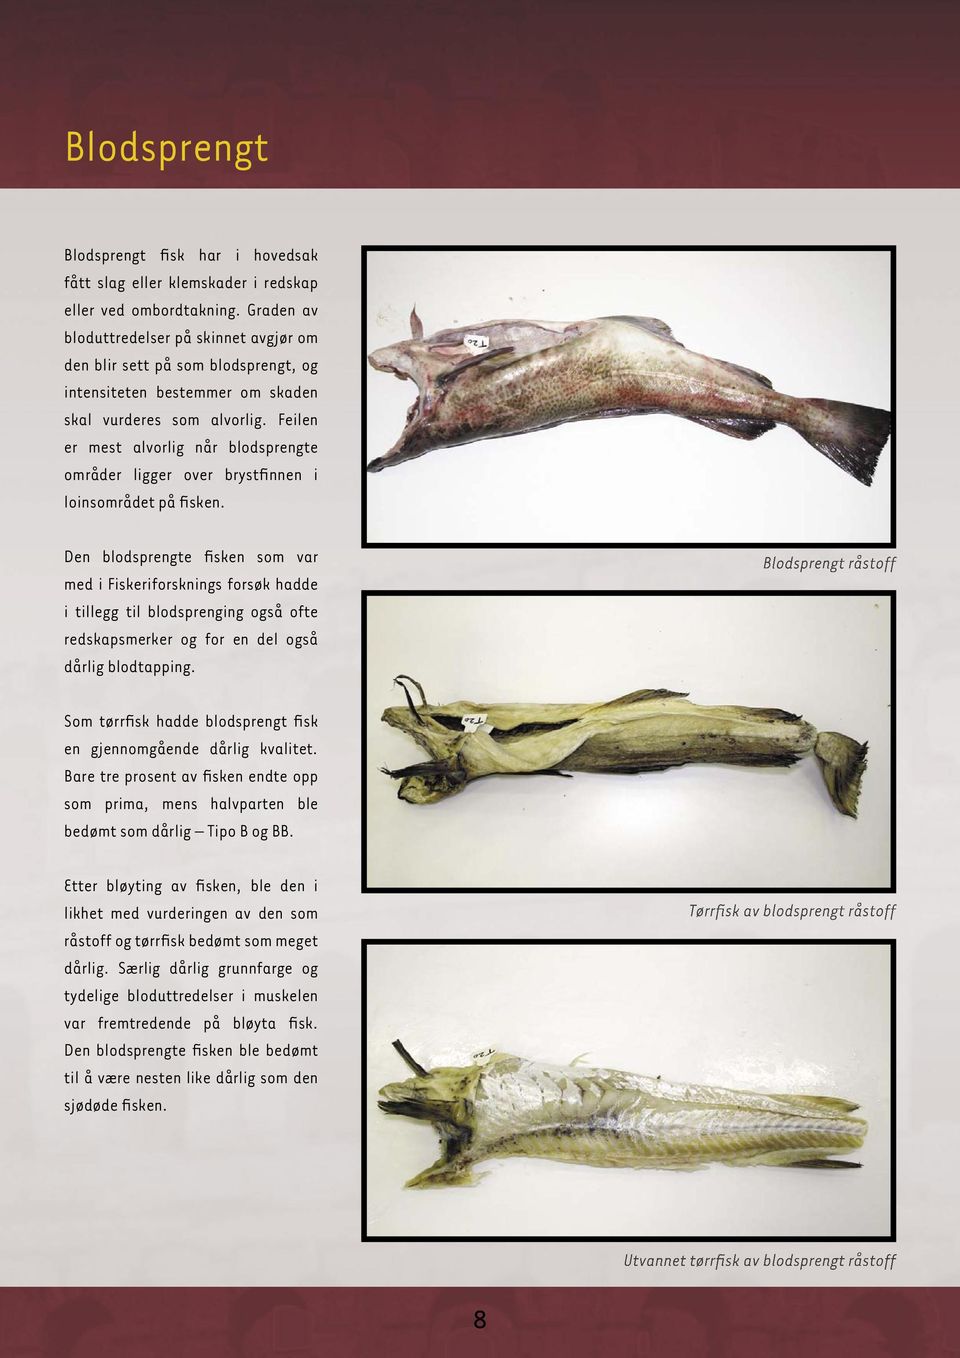 Feilen er mest alvorlig når blodsprengte områder ligger over brystfinnen i loinsområdet på fisken.